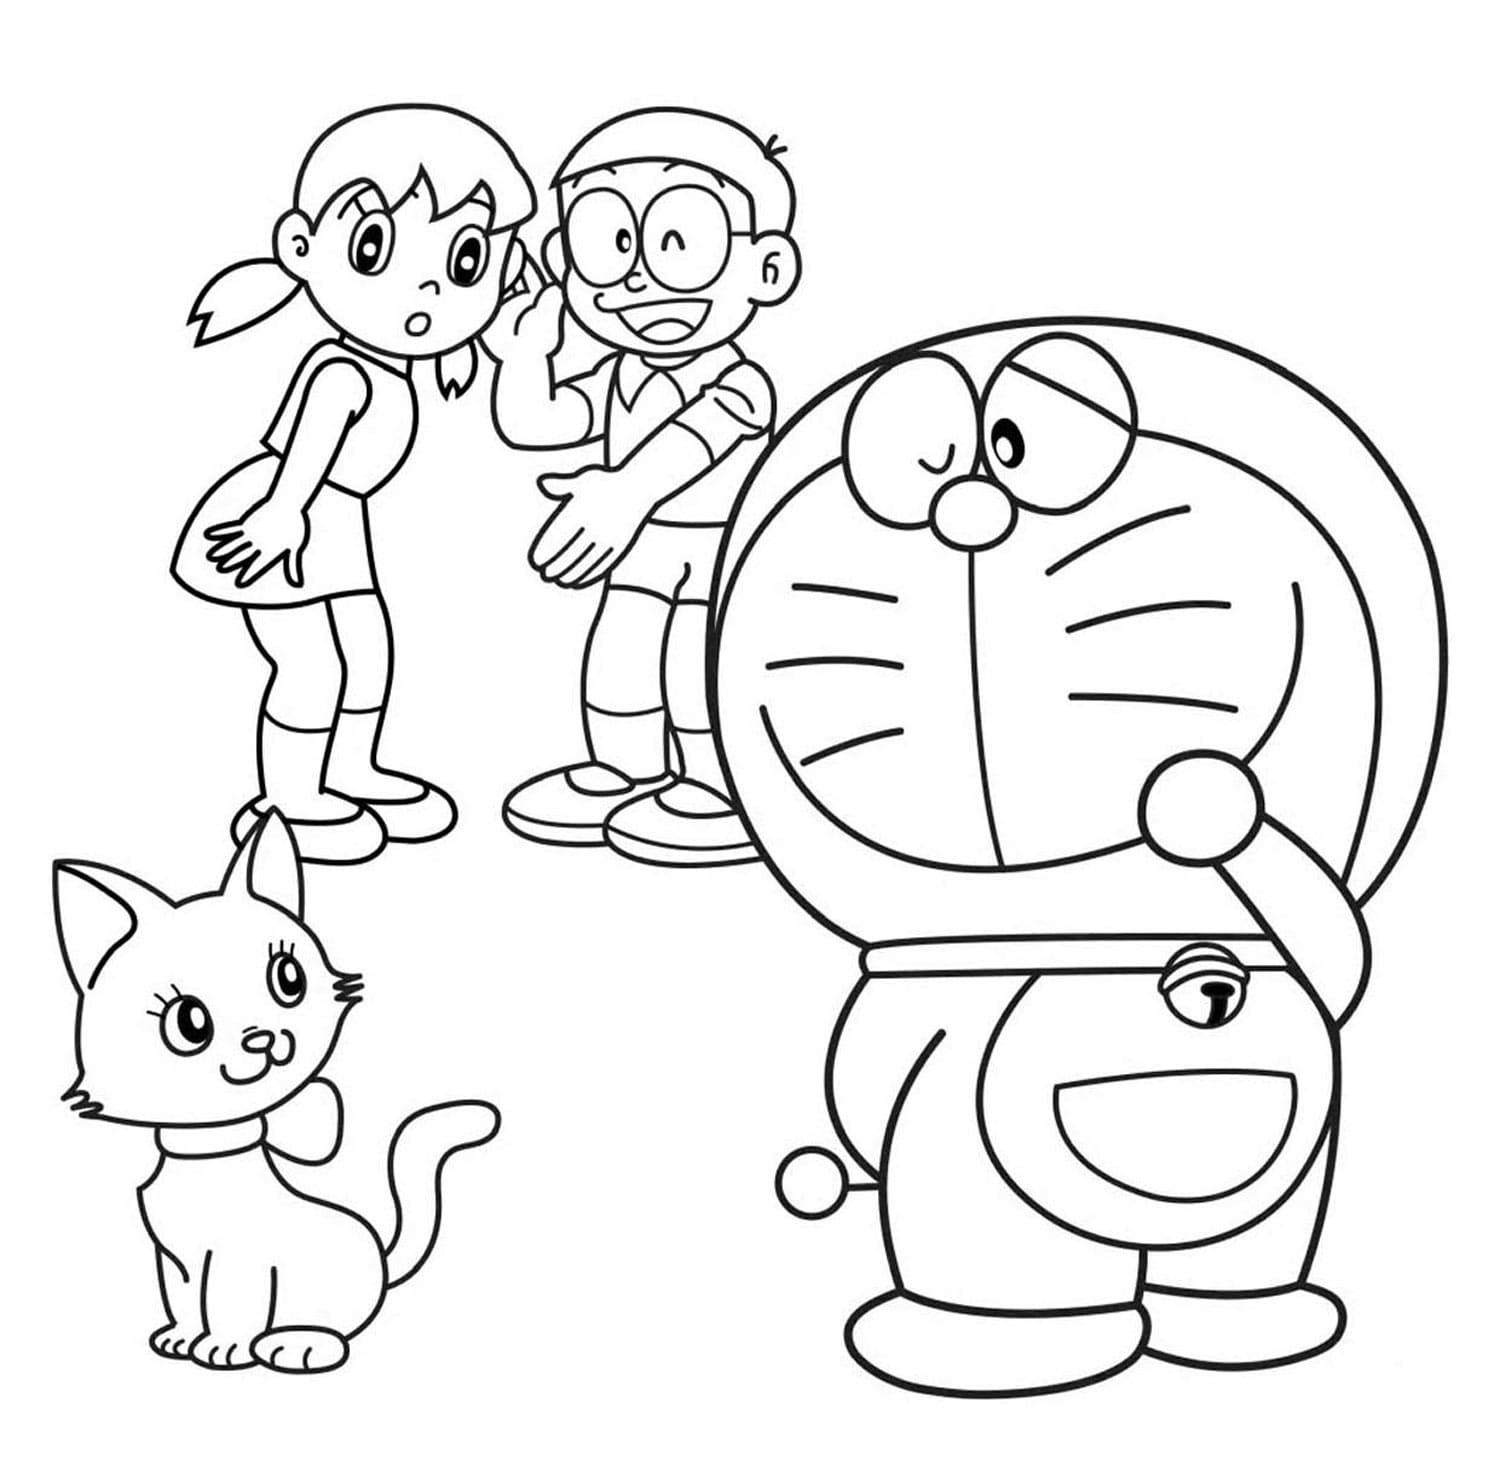 Doraemon Coloring Pages: Một thế giới cổ tích với những hình vẽ Doraemon đang chờ đợi bạn tô màu. Cùng với chú mèo máy thông minh và những người bạn, bạn sẽ được xây dựng một câu chuyện riêng của mình. Hãy tận hưởng giây phút thư giãn và sáng tạo với Doraemon Coloring Pages.